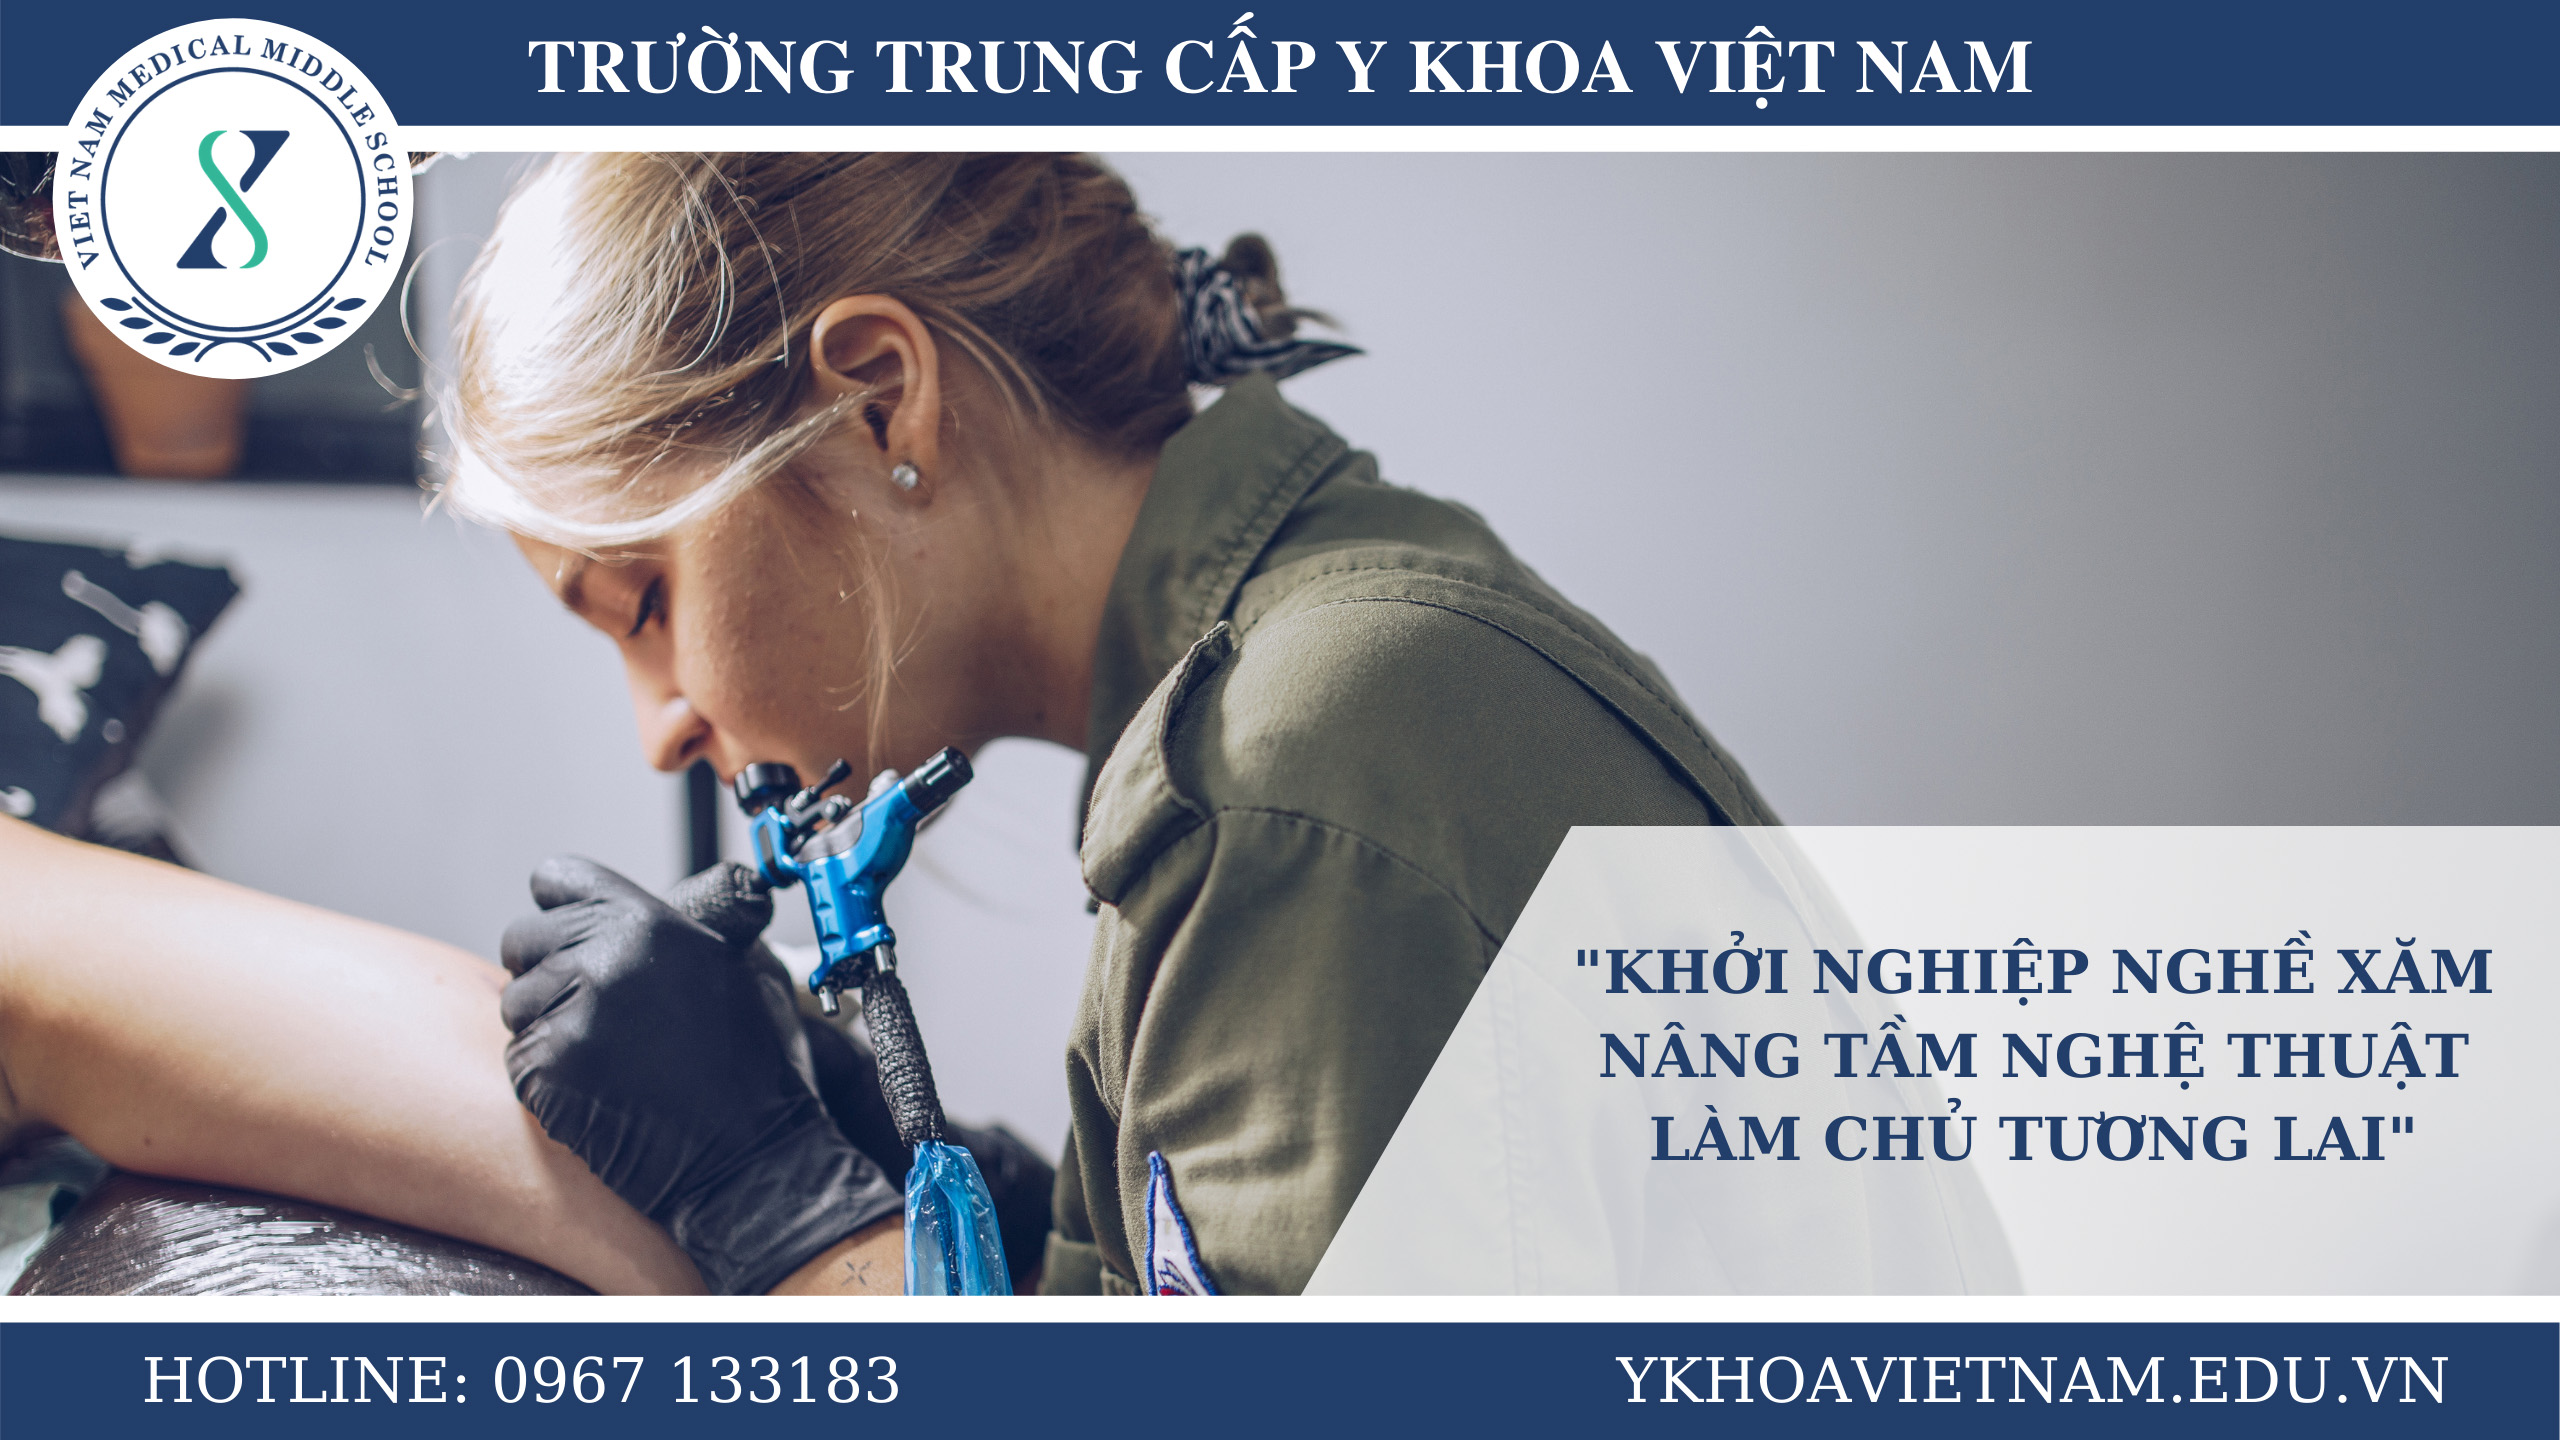 Trung cấp Y khoa Việt Nam: Là một trong những trường học nổi tiếng nhất tại Việt Nam về ngành y, Trung cấp Y khoa Việt Nam cung cấp một khóa học tuyệt vời cho những người muốn trở thành những chuyên gia trong lĩnh vực y học. Với chất lượng giảng dạy cao và các cơ hội thực tập, bạn sẽ trở thành tài năng ngành y trong tương lai.